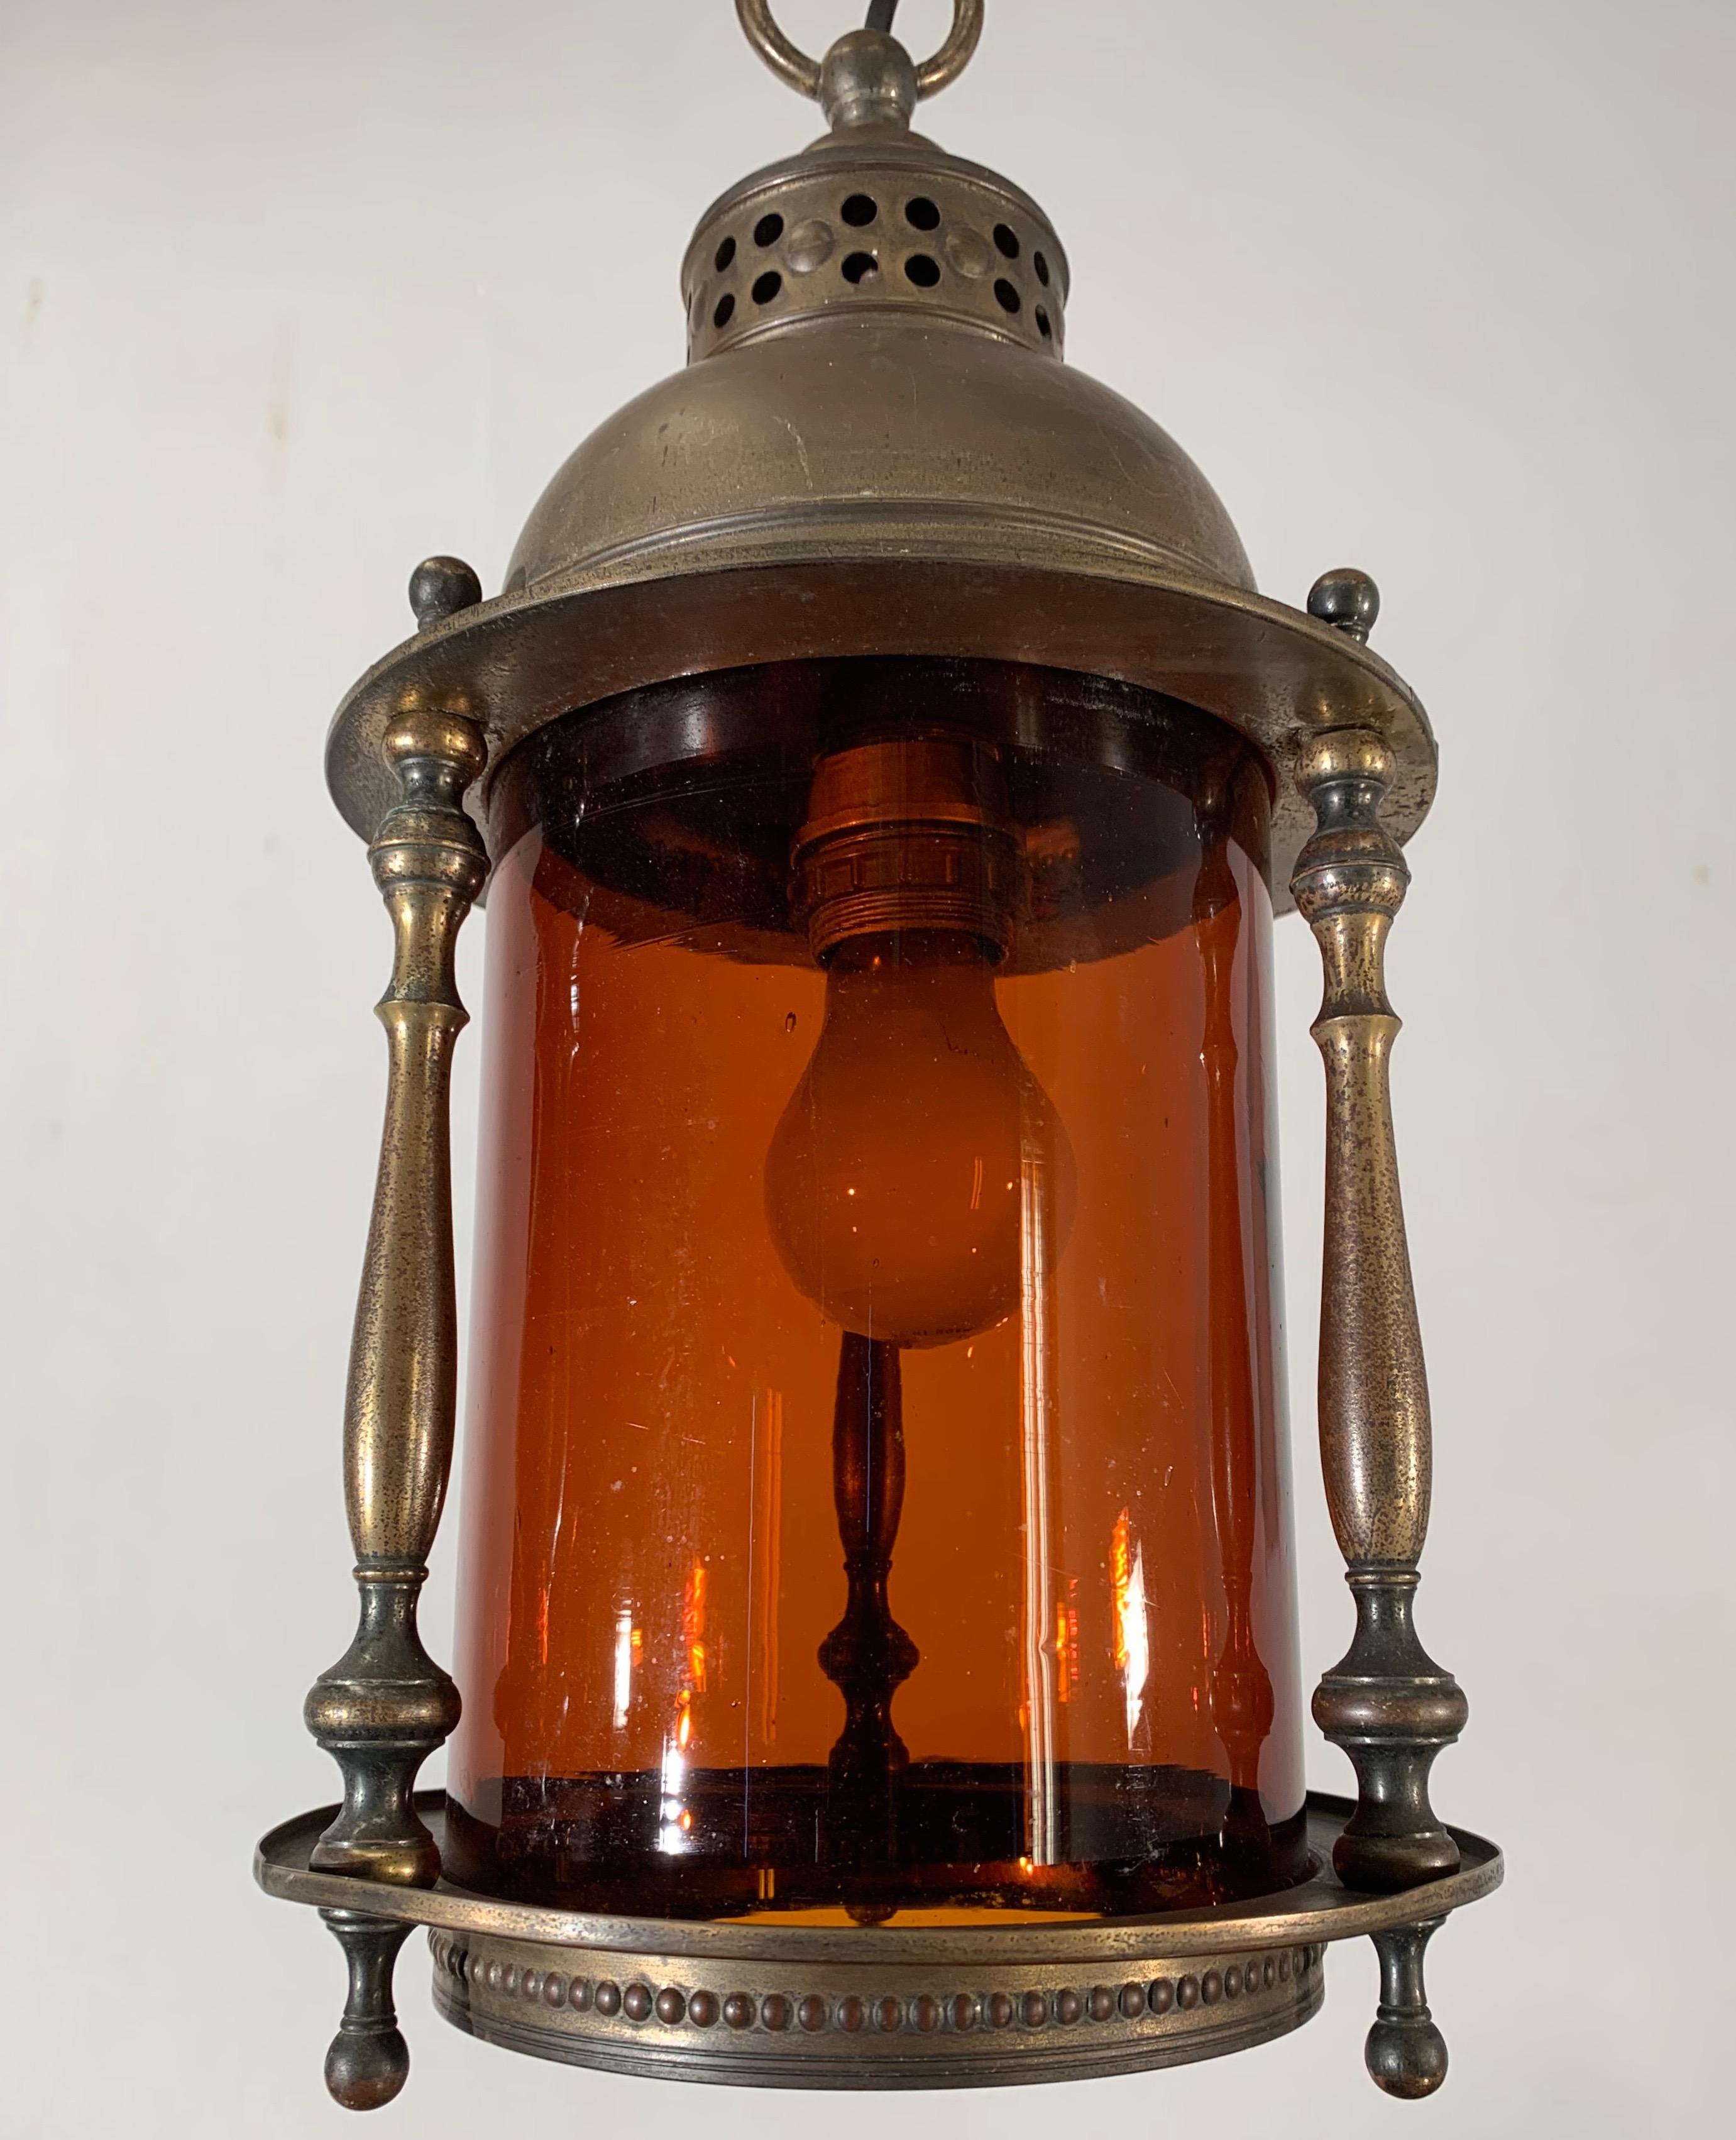 Rare luminaire inspiré d'une lanterne de bateau avec verre rond d'origine

Si vous êtes à la recherche d'une suspension Arts & Crafts élégante pour créer une atmosphère chaleureuse dans votre entrée, dans votre chambre, sur votre palier ou dans un